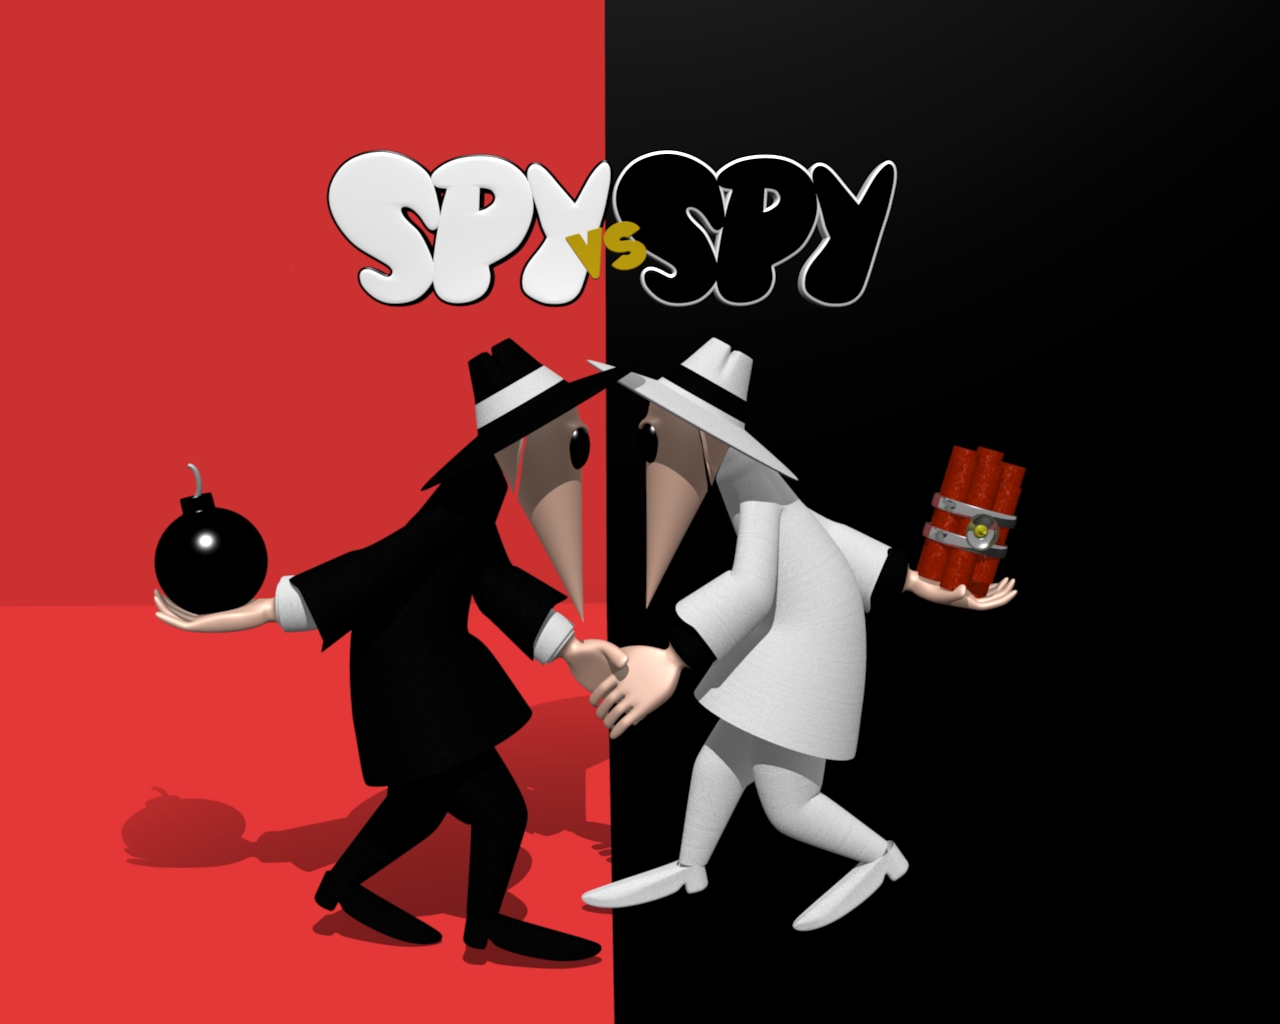 Spy Vs Spy - Spy Vs Spy In Color , HD Wallpaper & Backgrounds